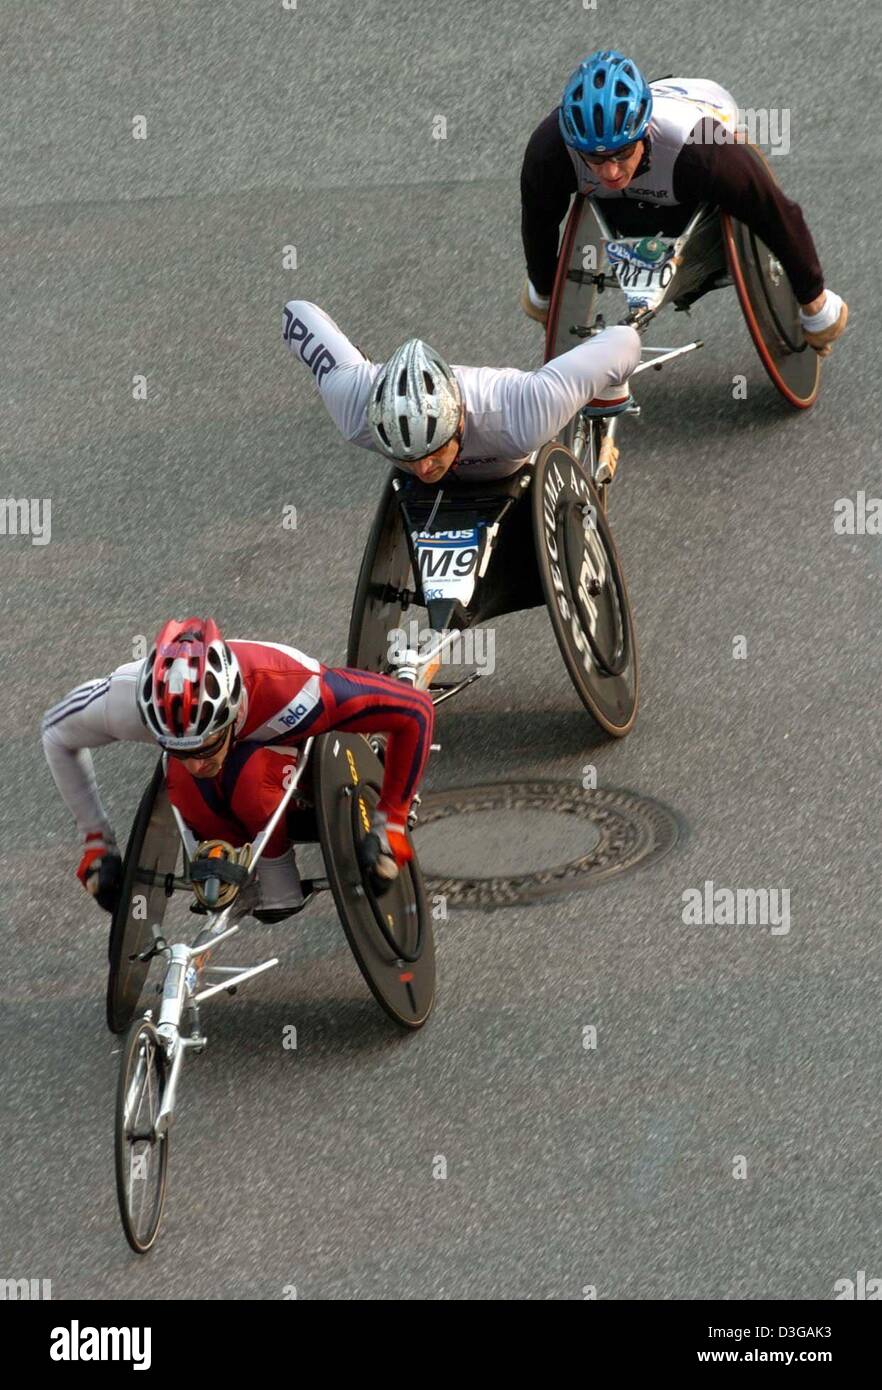 (Dpa) - tre atleti in carrozzina ritmo lungo una strada come parte di circa 20.000 corridori provenienti da 72 paesi che partecipano alla XIX maratona di Amburgo, che copre una distanza di 42.195 chilometri attraverso il greate città portuale di Amburgo, Germania, 18 aprile 2004. Foto Stock